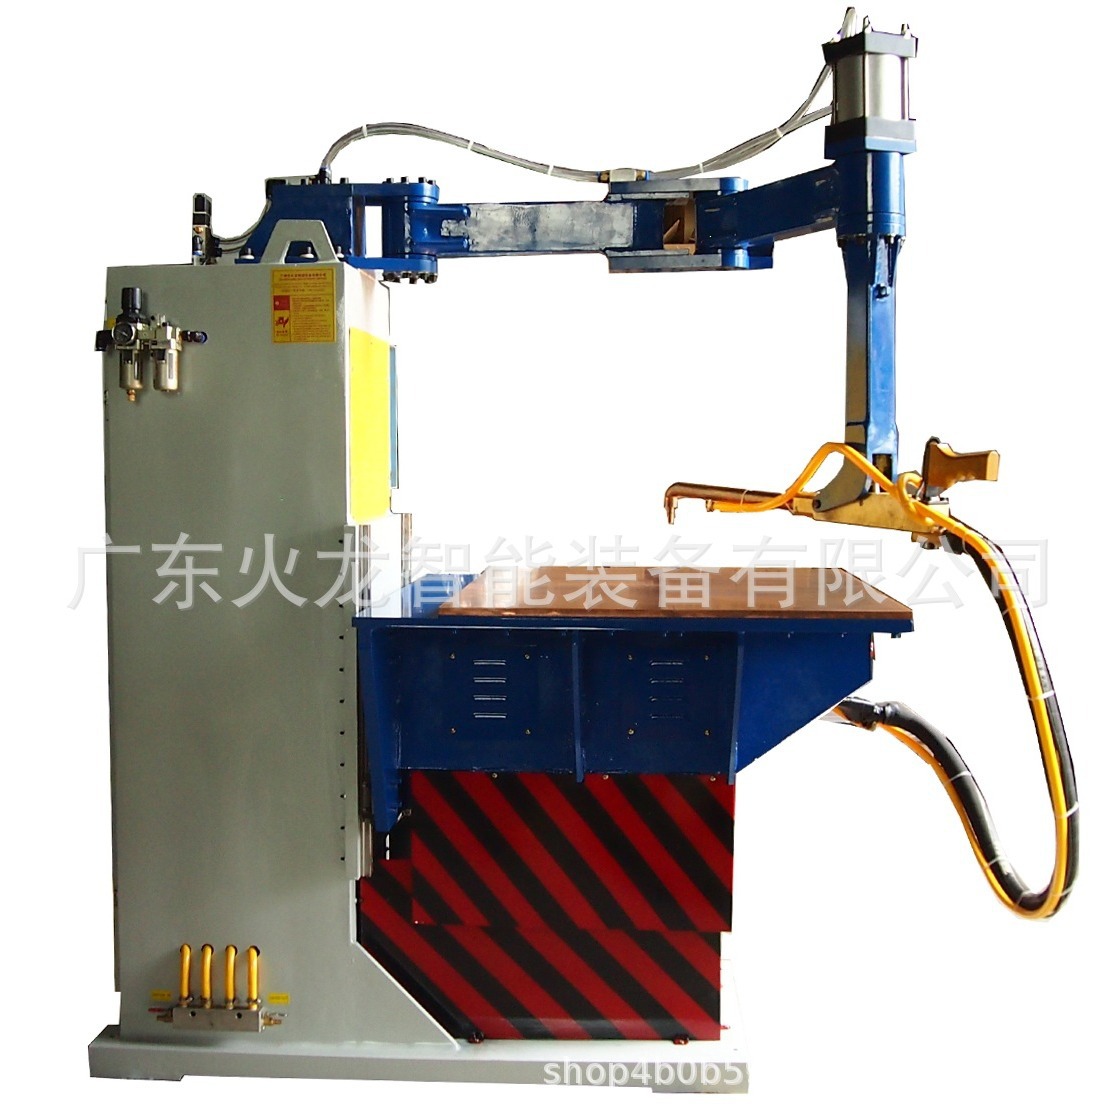 广东火龙DNT系列摇臂式台面点焊机生产制造商家